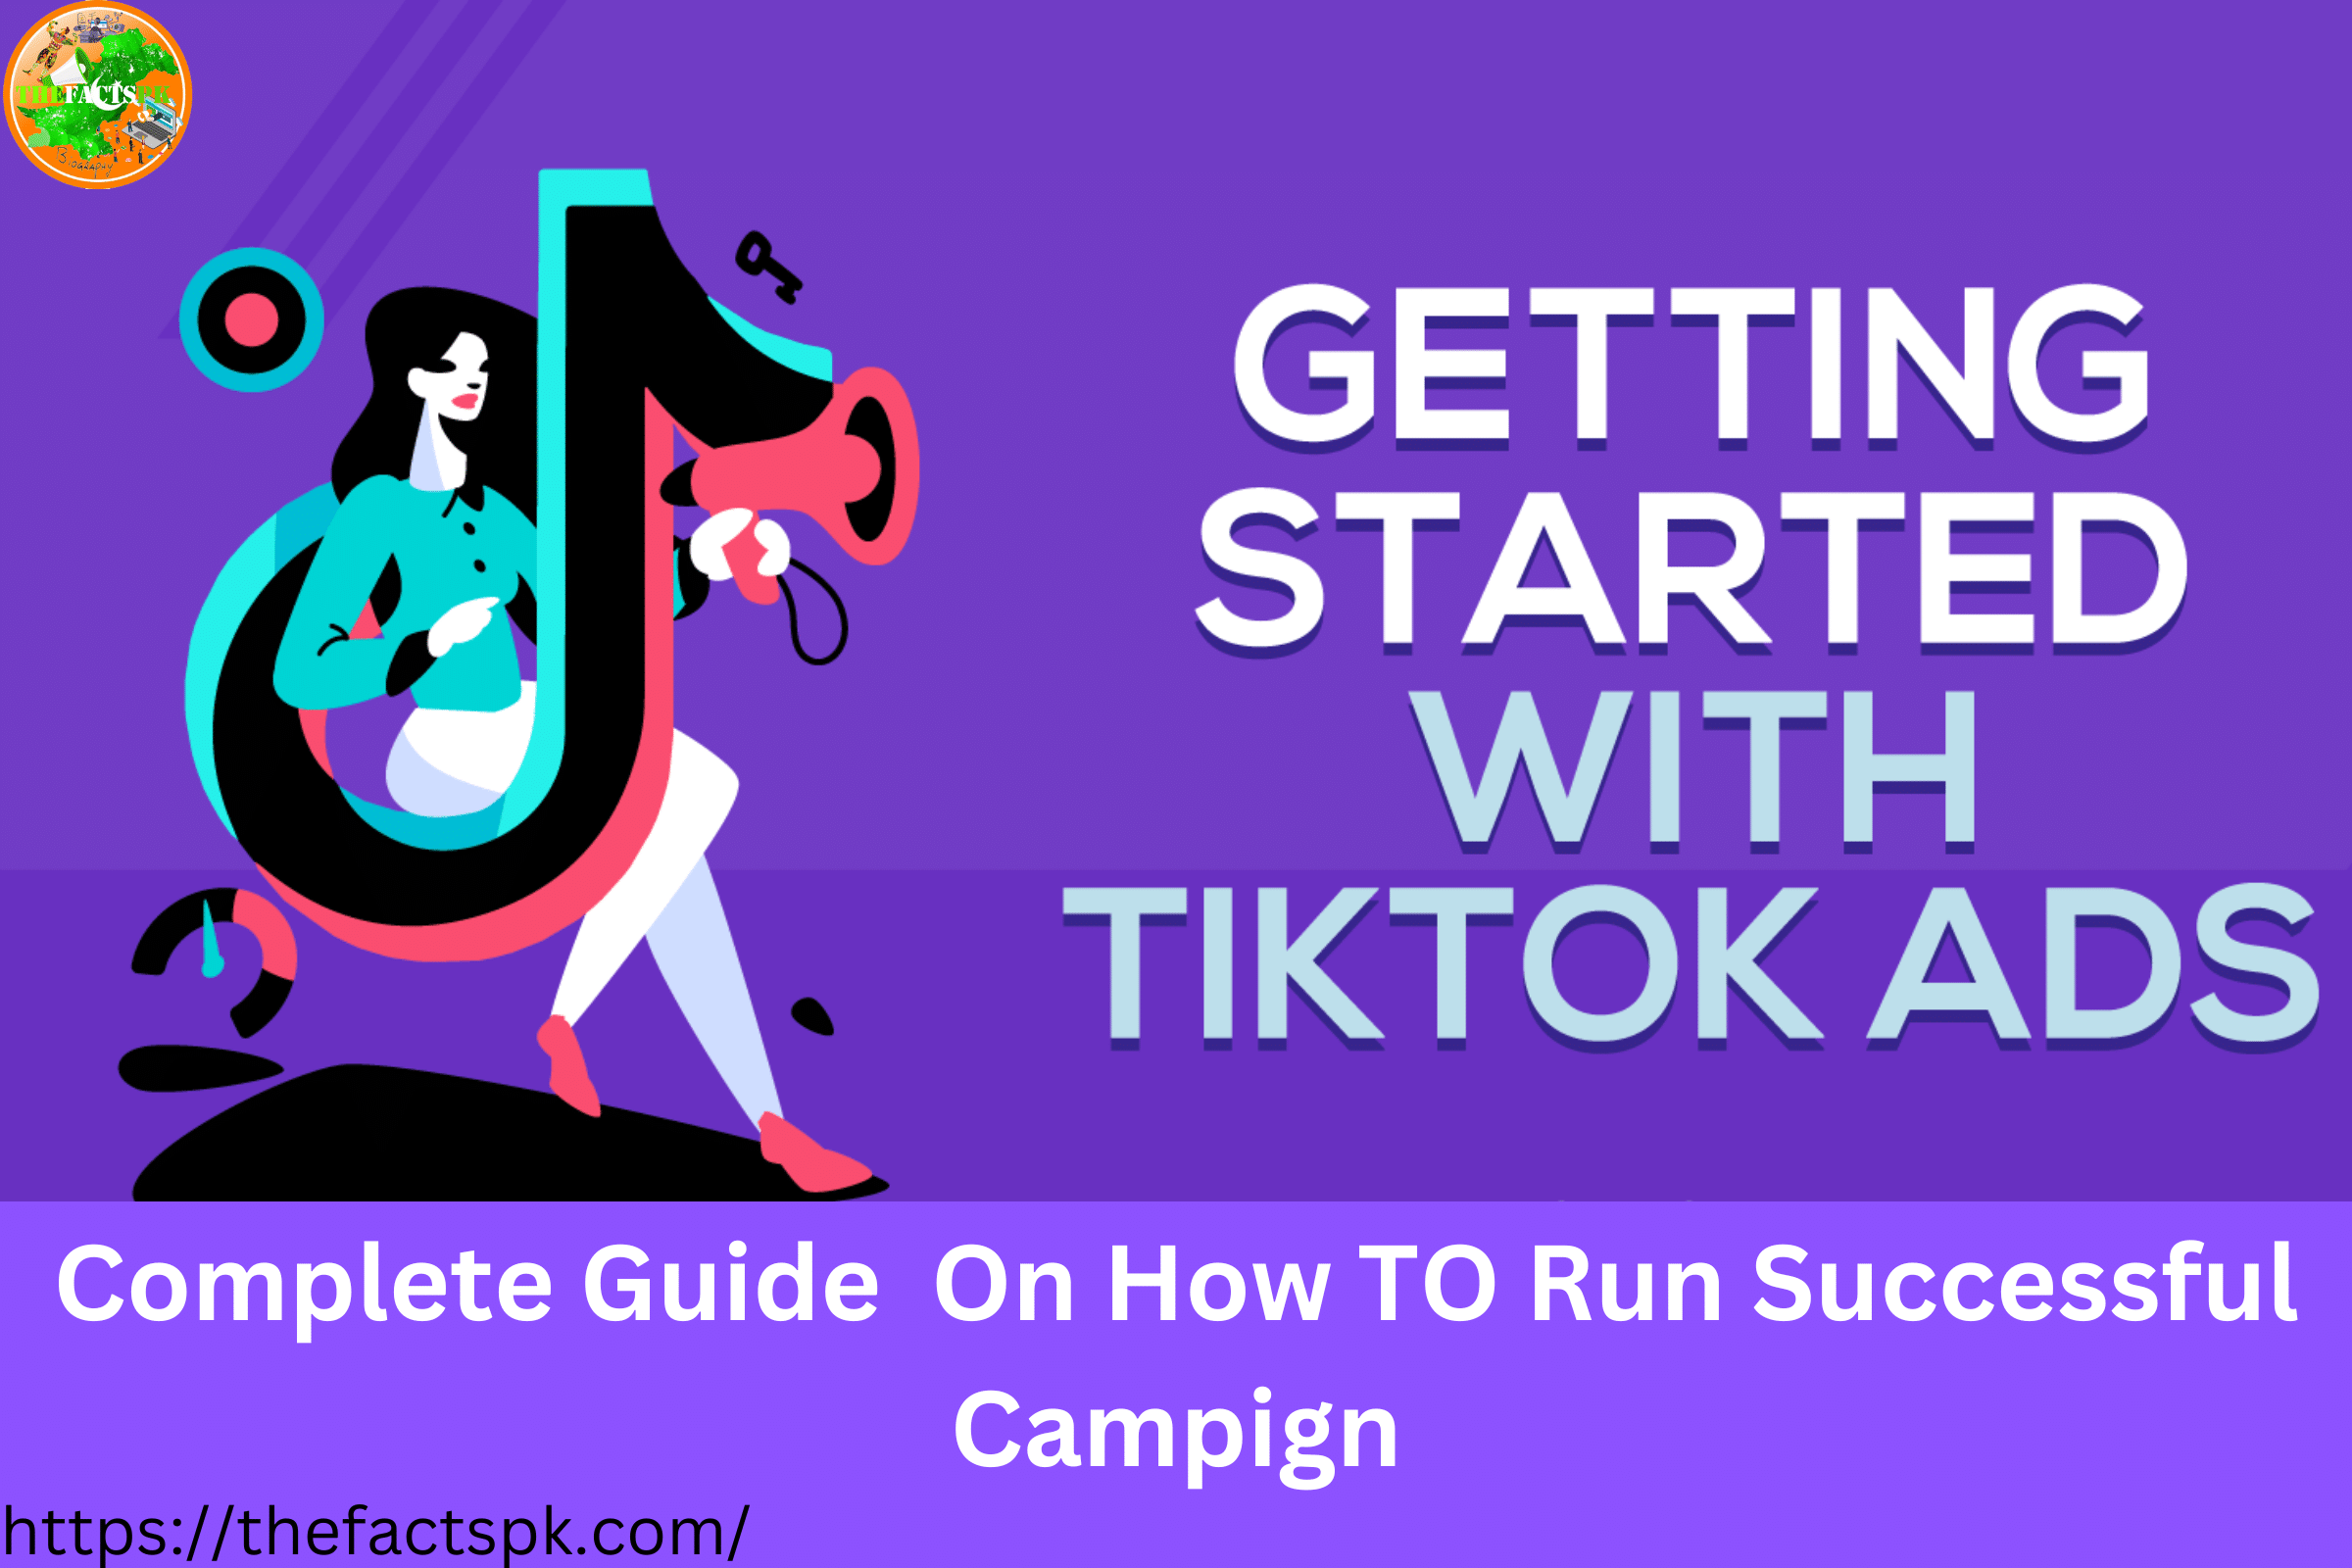 Start with Tiktok ads